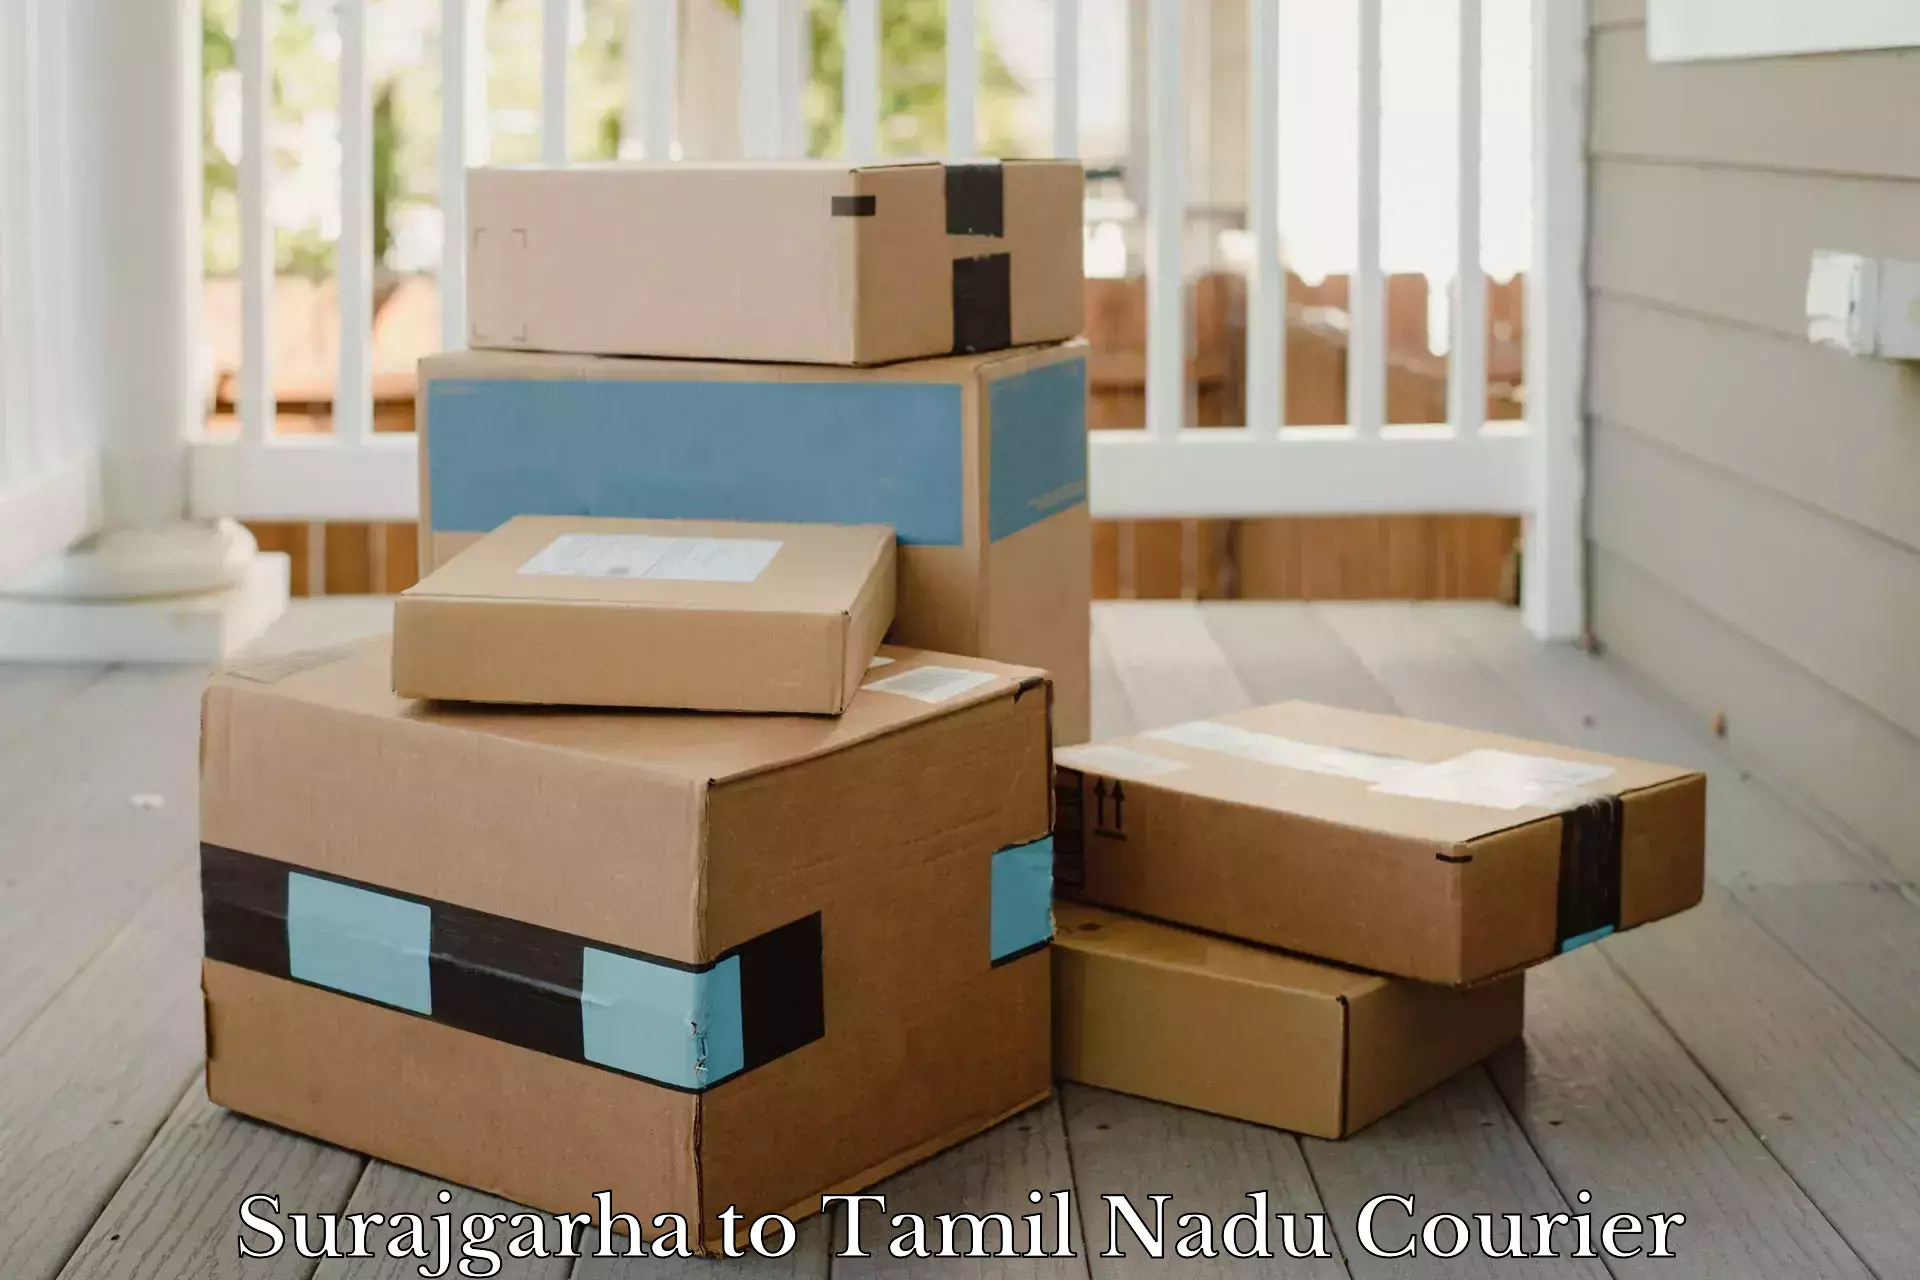 Heavy parcel delivery in Surajgarha to Tamil Nadu